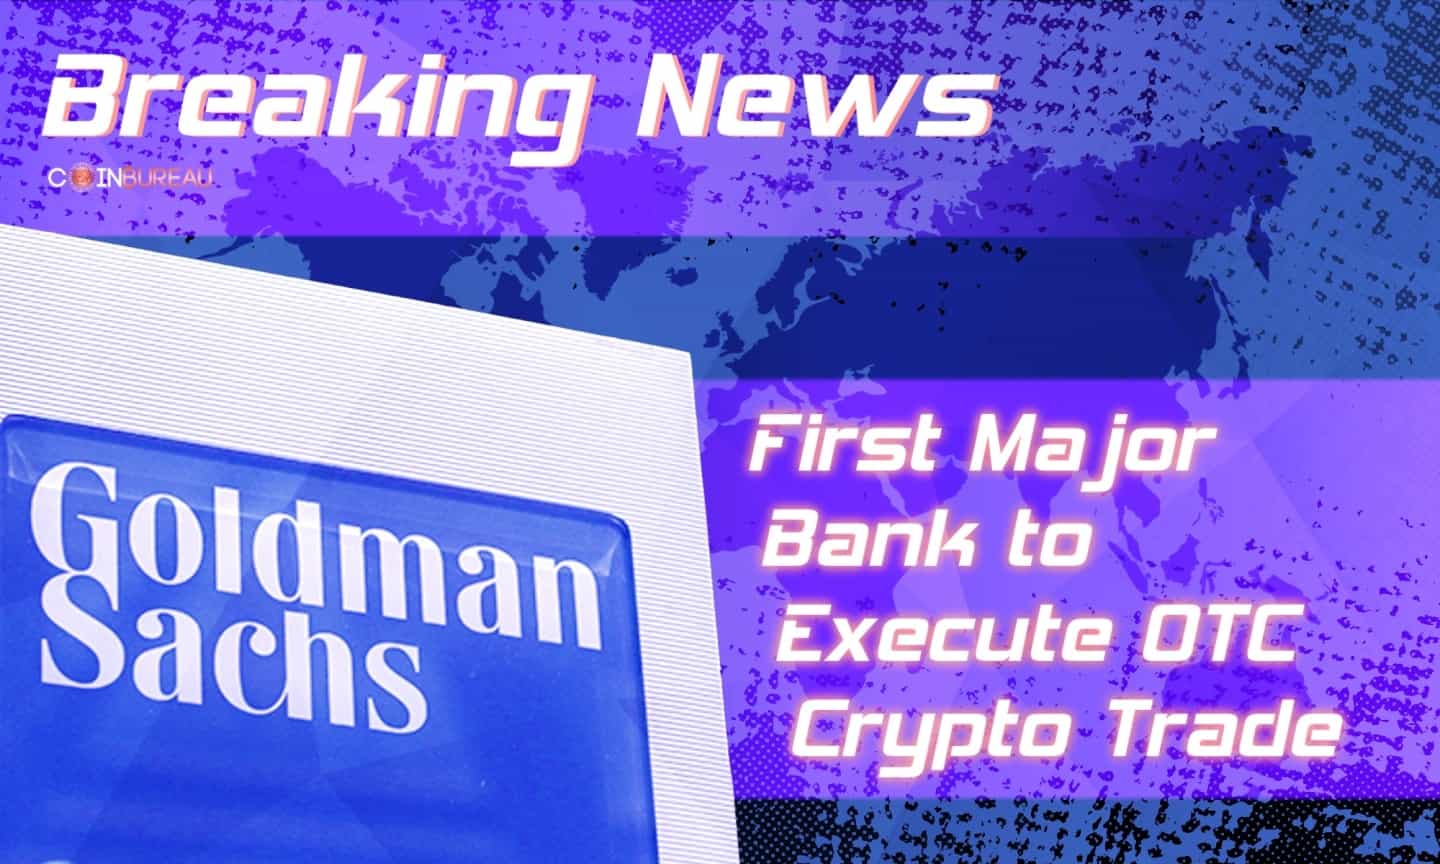 Goldman Sachs Becomes First Major Bank to Execute OTC Crypto